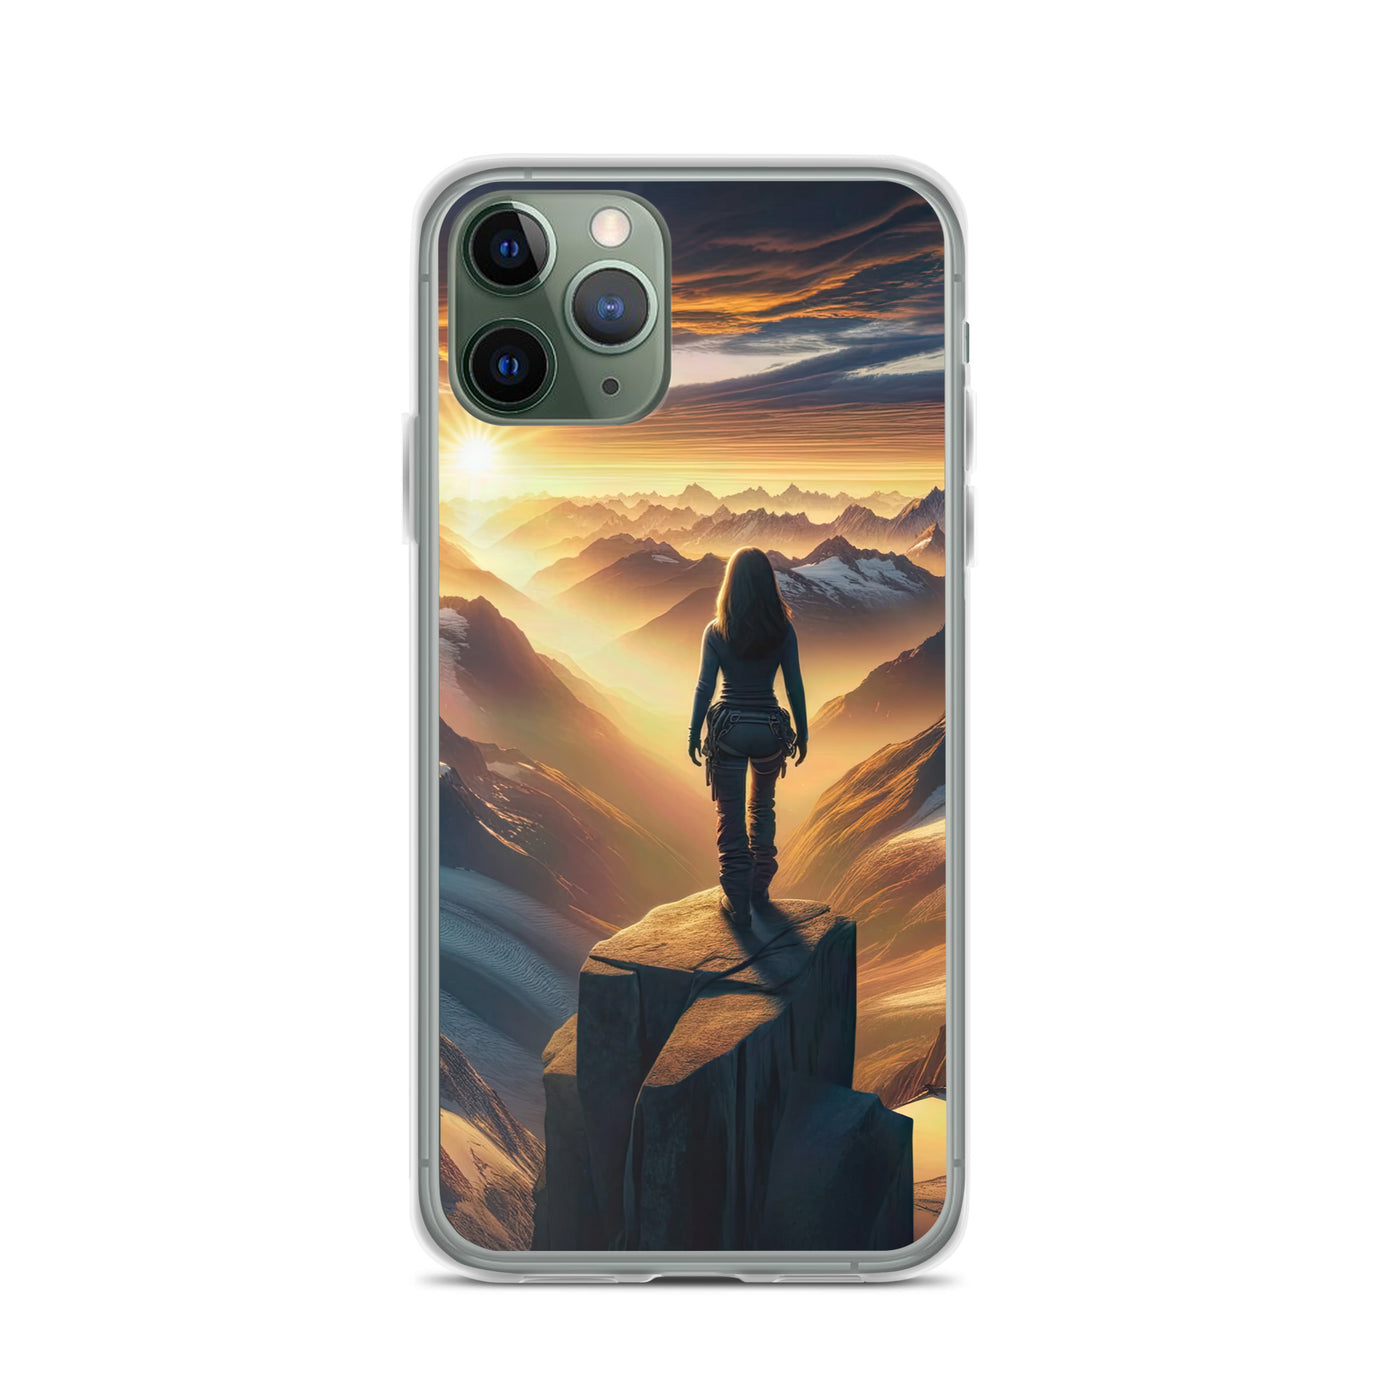 Fotorealistische Darstellung der Alpen bei Sonnenaufgang, Wanderin unter einem gold-purpurnen Himmel - iPhone Schutzhülle (durchsichtig) wandern xxx yyy zzz iPhone 11 Pro